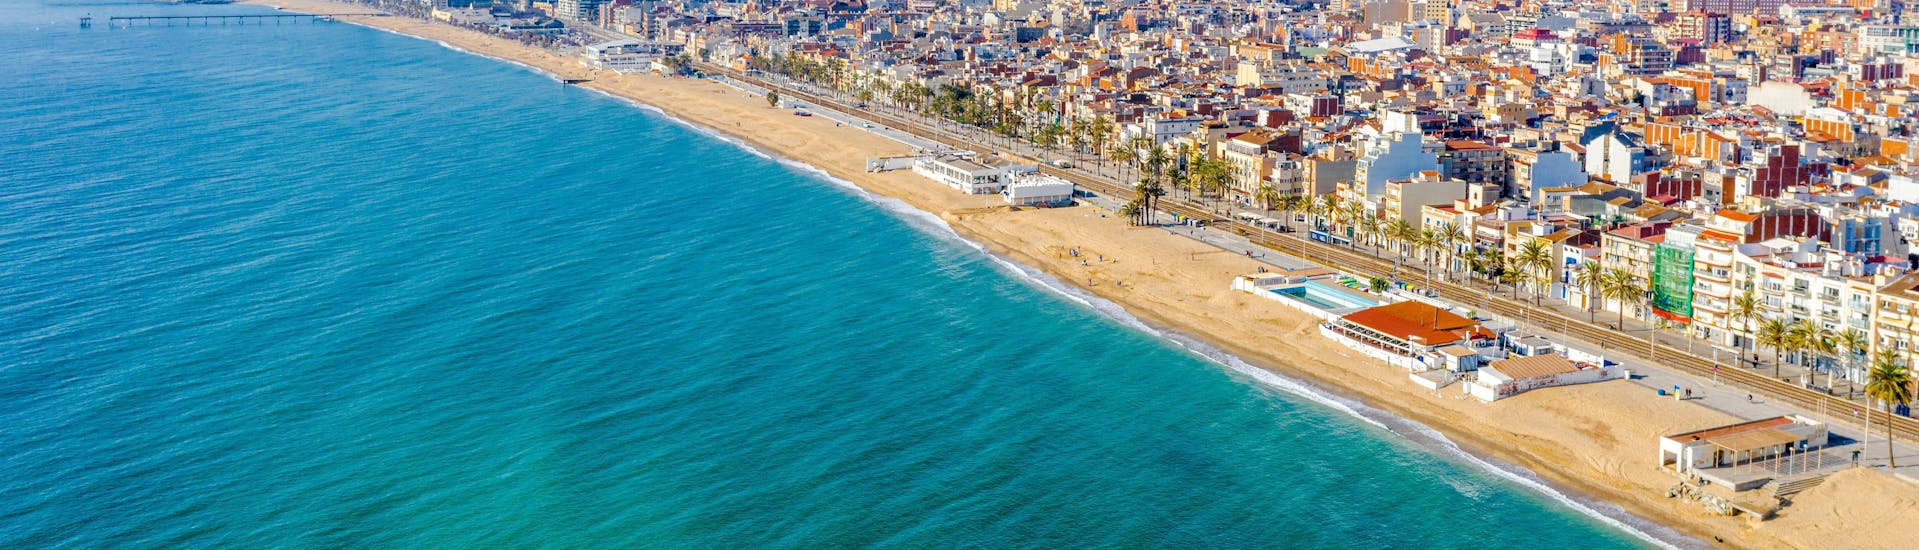 Playa de Badalona en Barcelona durante la temporada de verano.